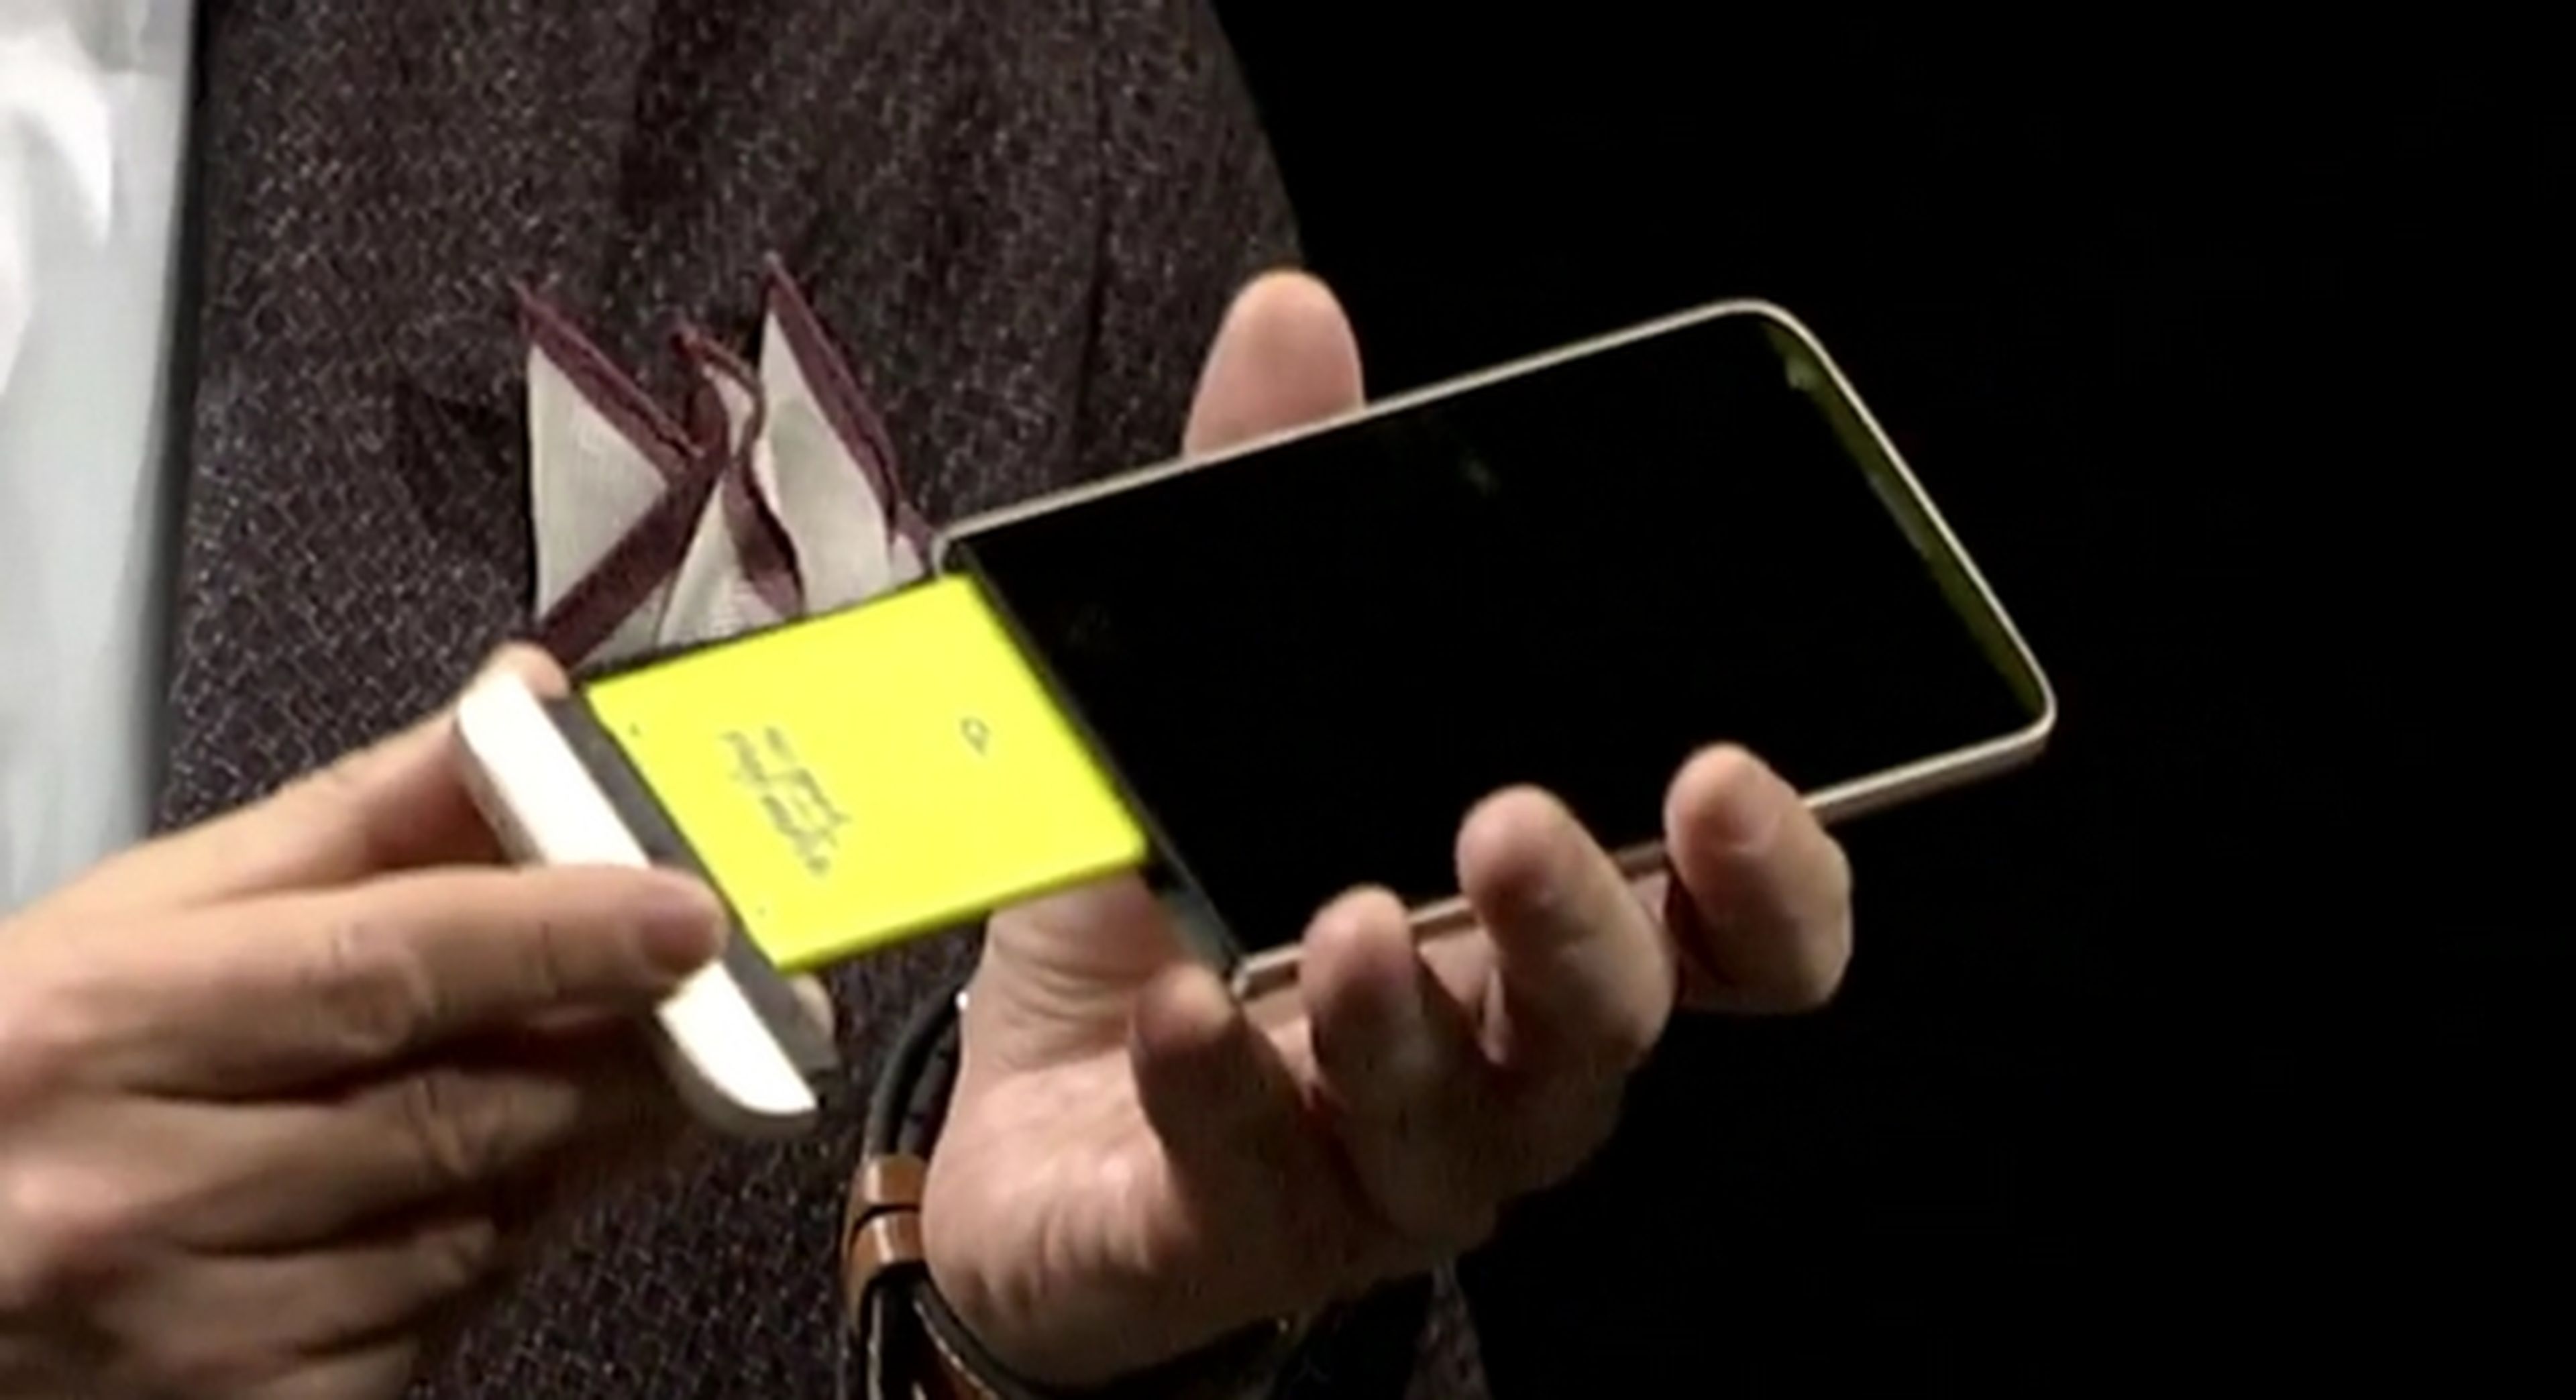 LG G5 con Magic Slot, un nuevo concepto de teléfono modular